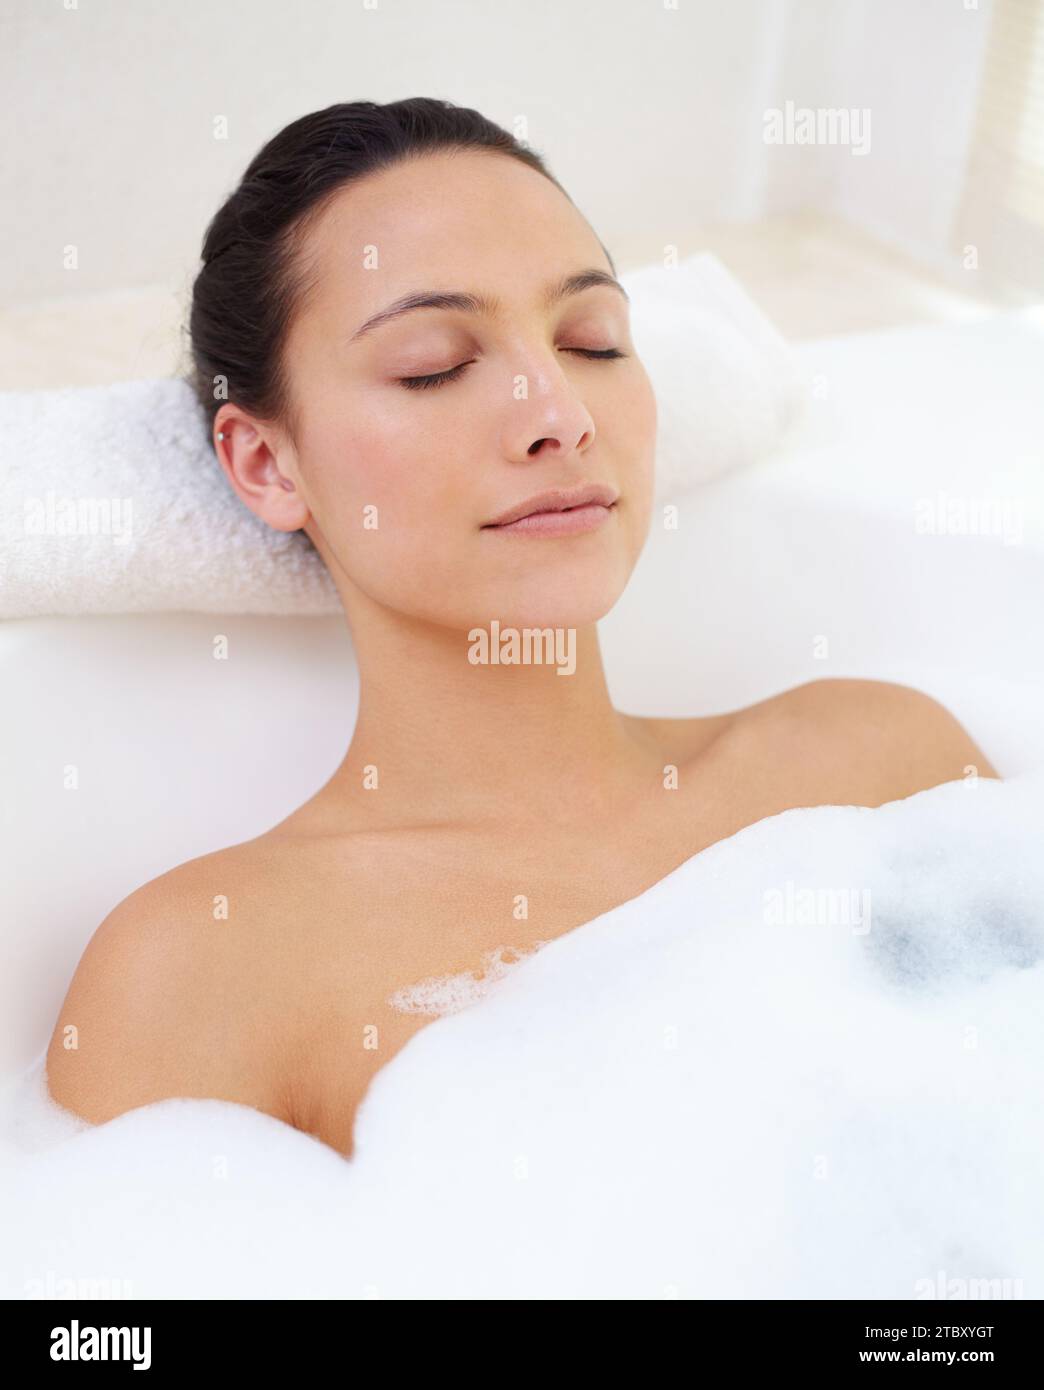 Badezimmer, entspannen und Gesicht der Frau in der Badewanne für Wellness, Stress oder Körperpflege mit Komfort zu Hause. Bad, Ruhe oder Person, die in der Wanne badete Stockfoto